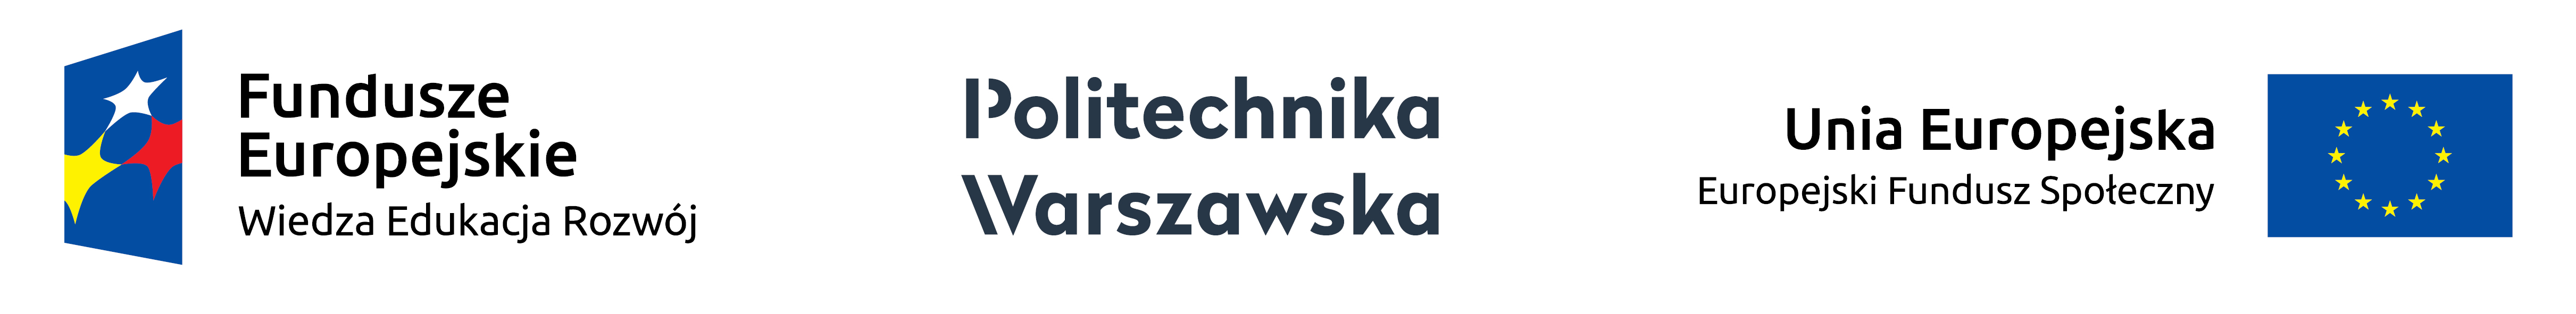 Он охватывает весь Варшавский технологический университет